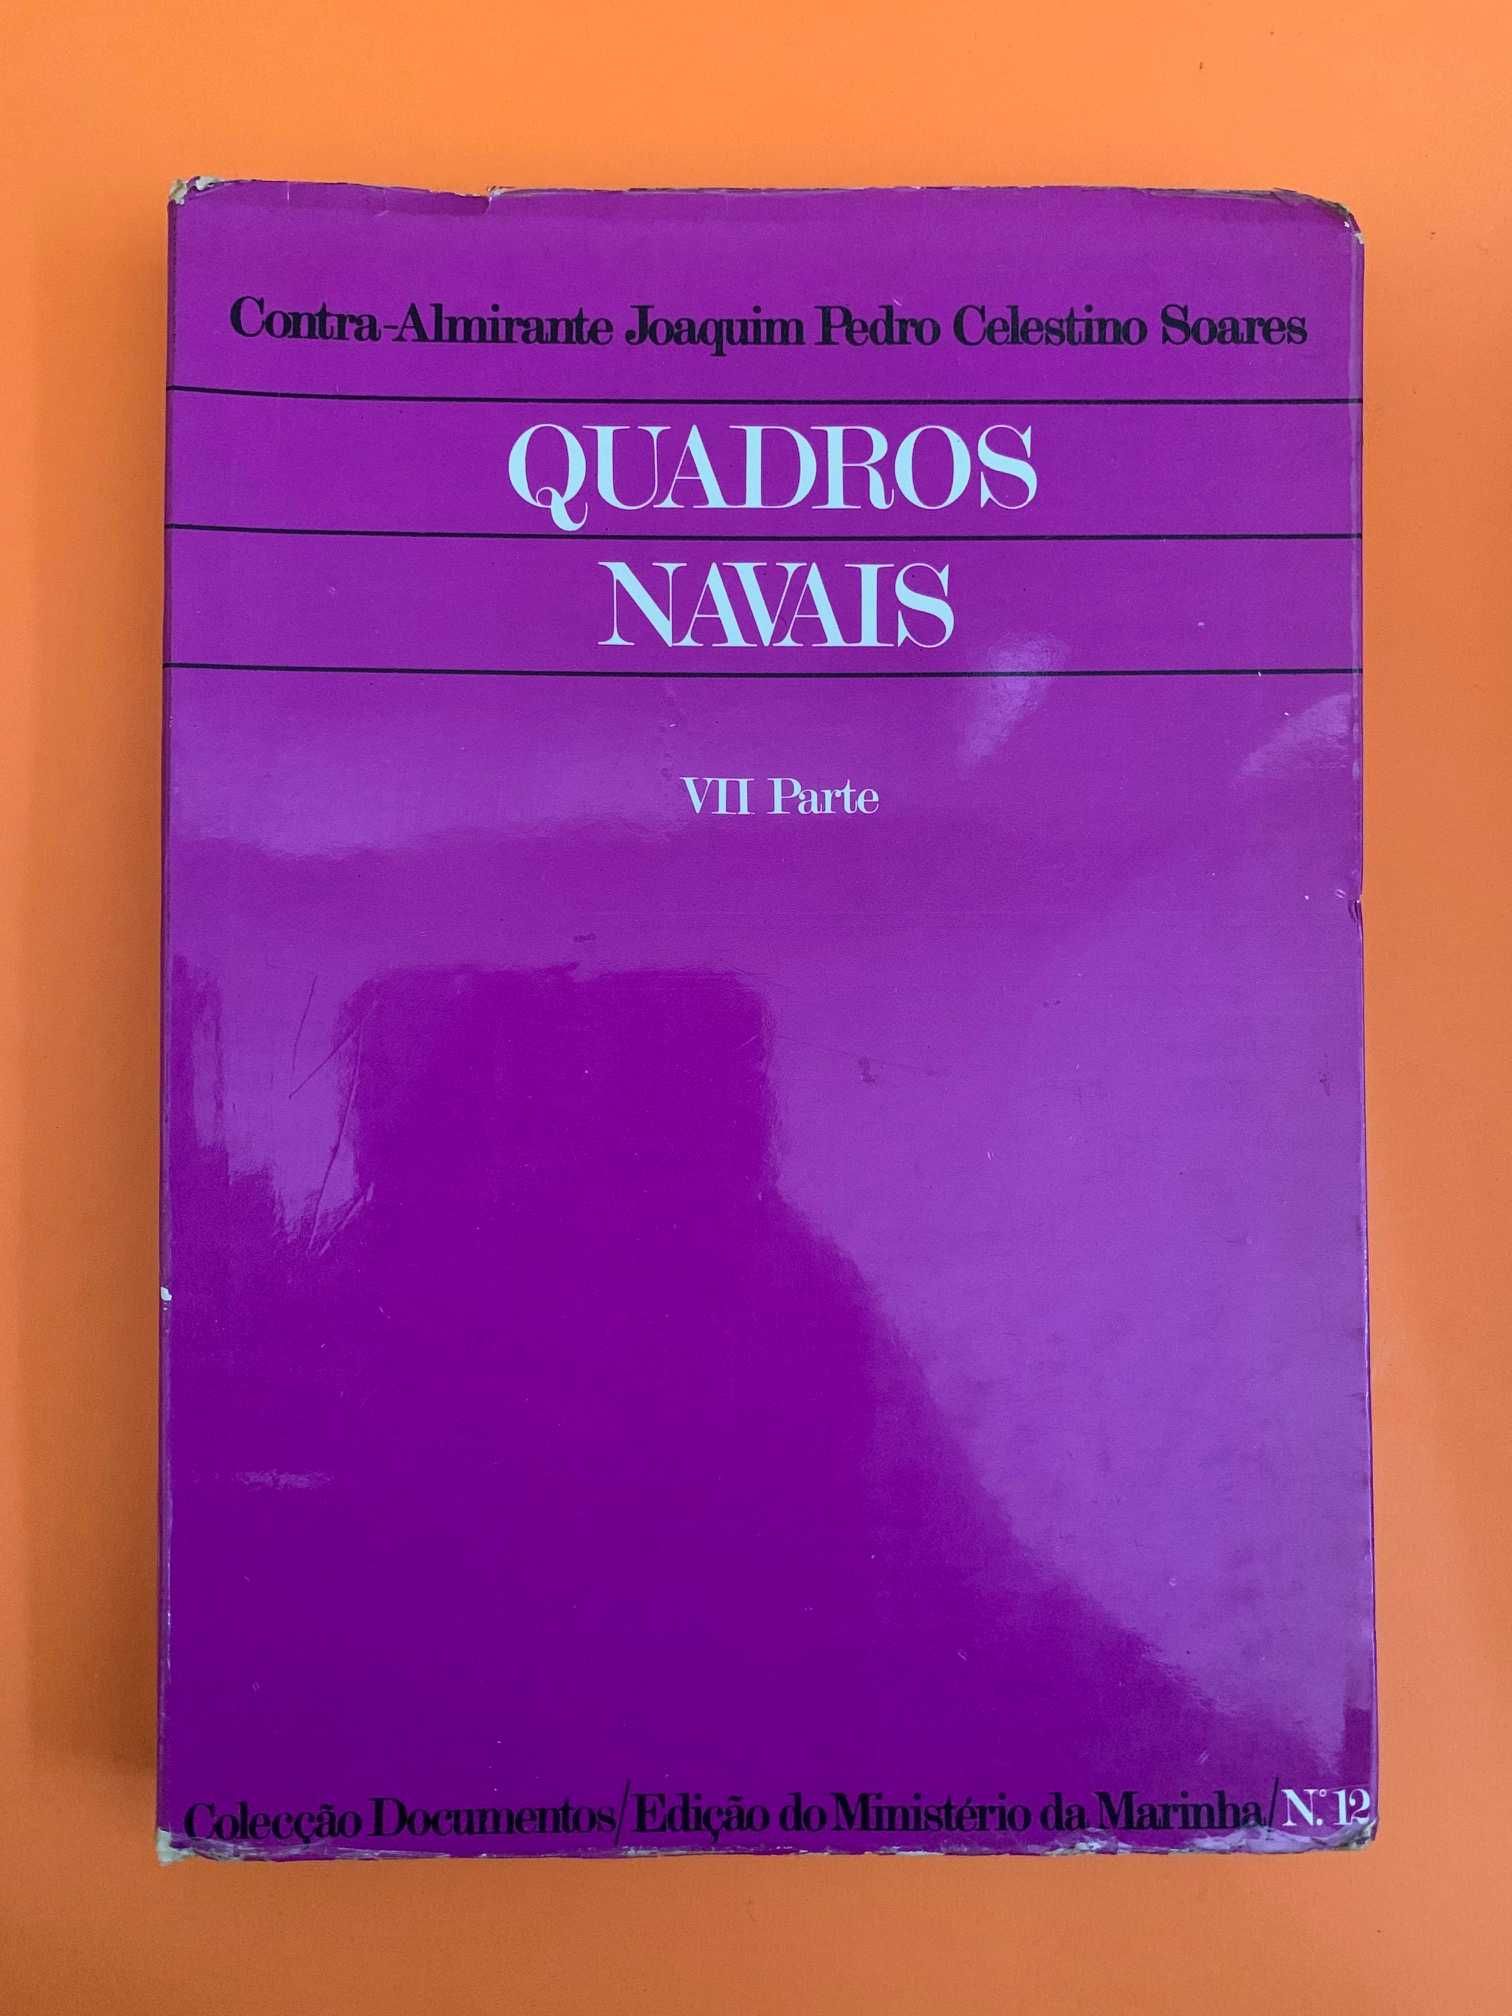 Quadros Navais, VII Parte - Contra-Almirante J.P. Celestino Soares